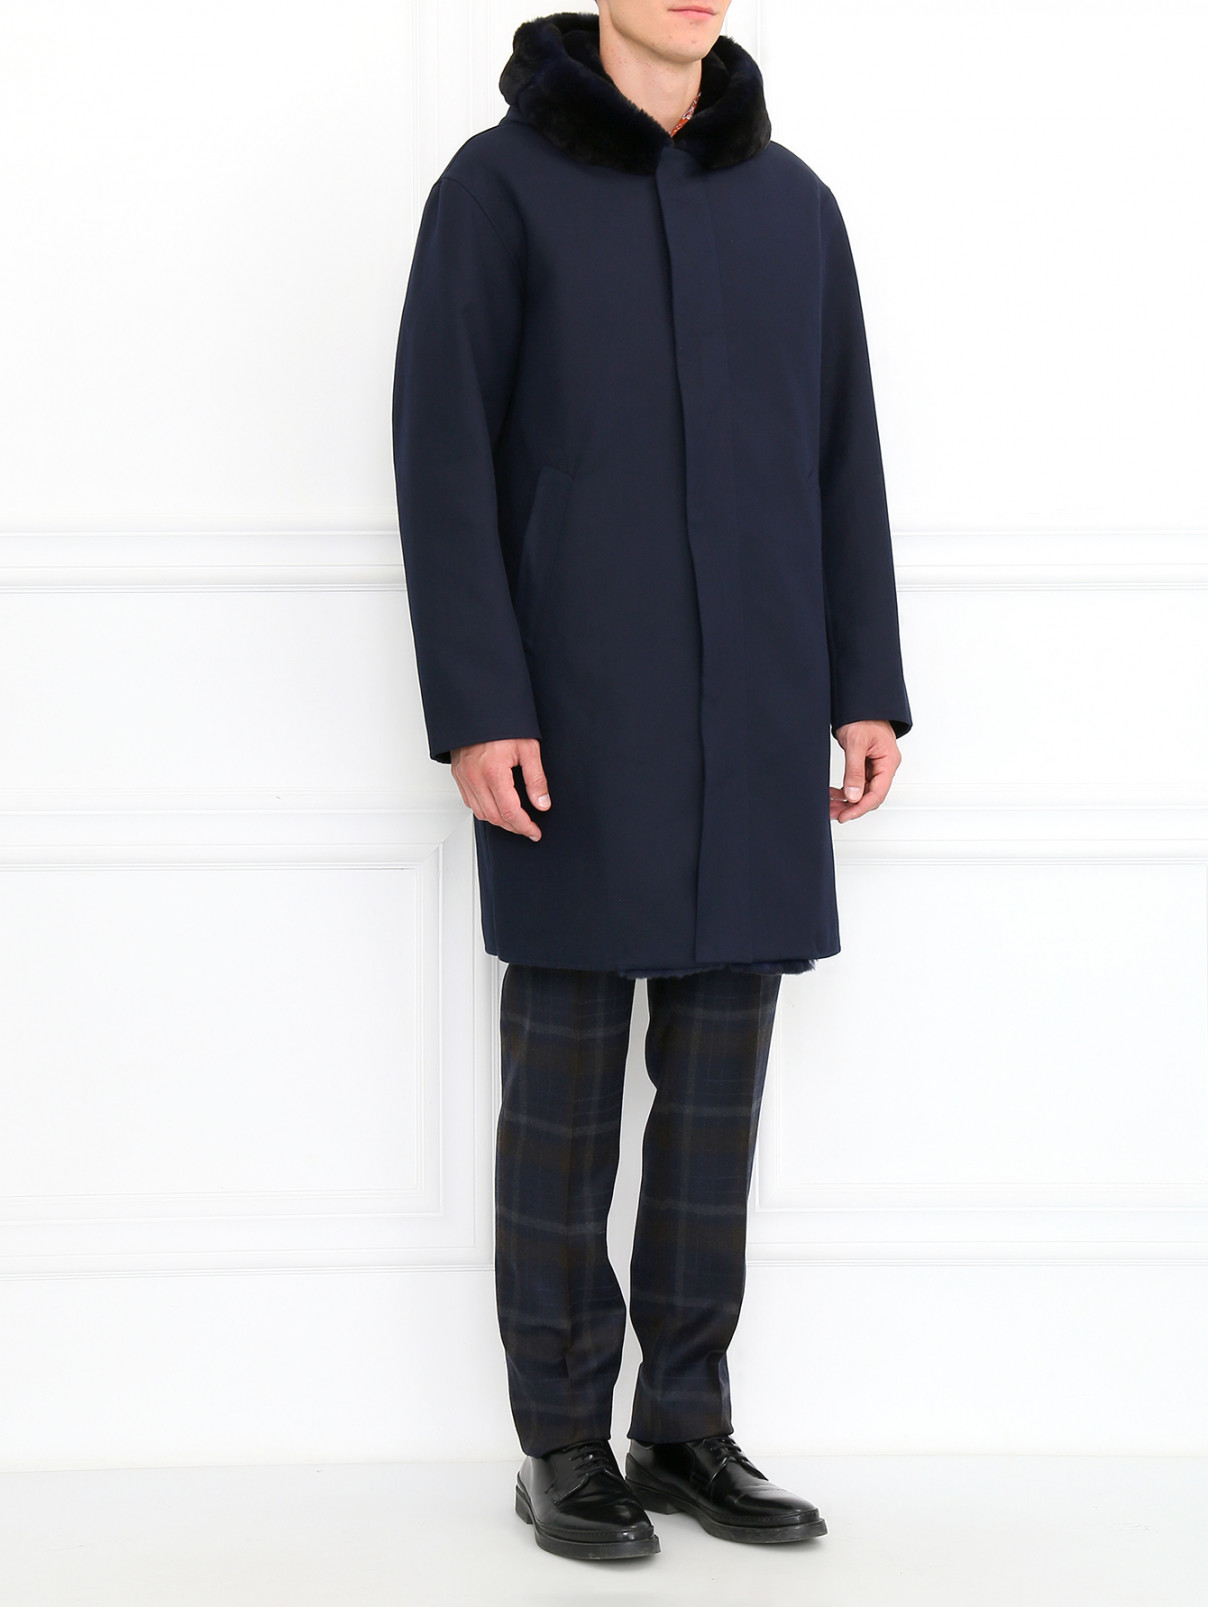 Пальто из хлопка с капюшоном Ermanno Scervino  –  Модель Общий вид  – Цвет:  Синий